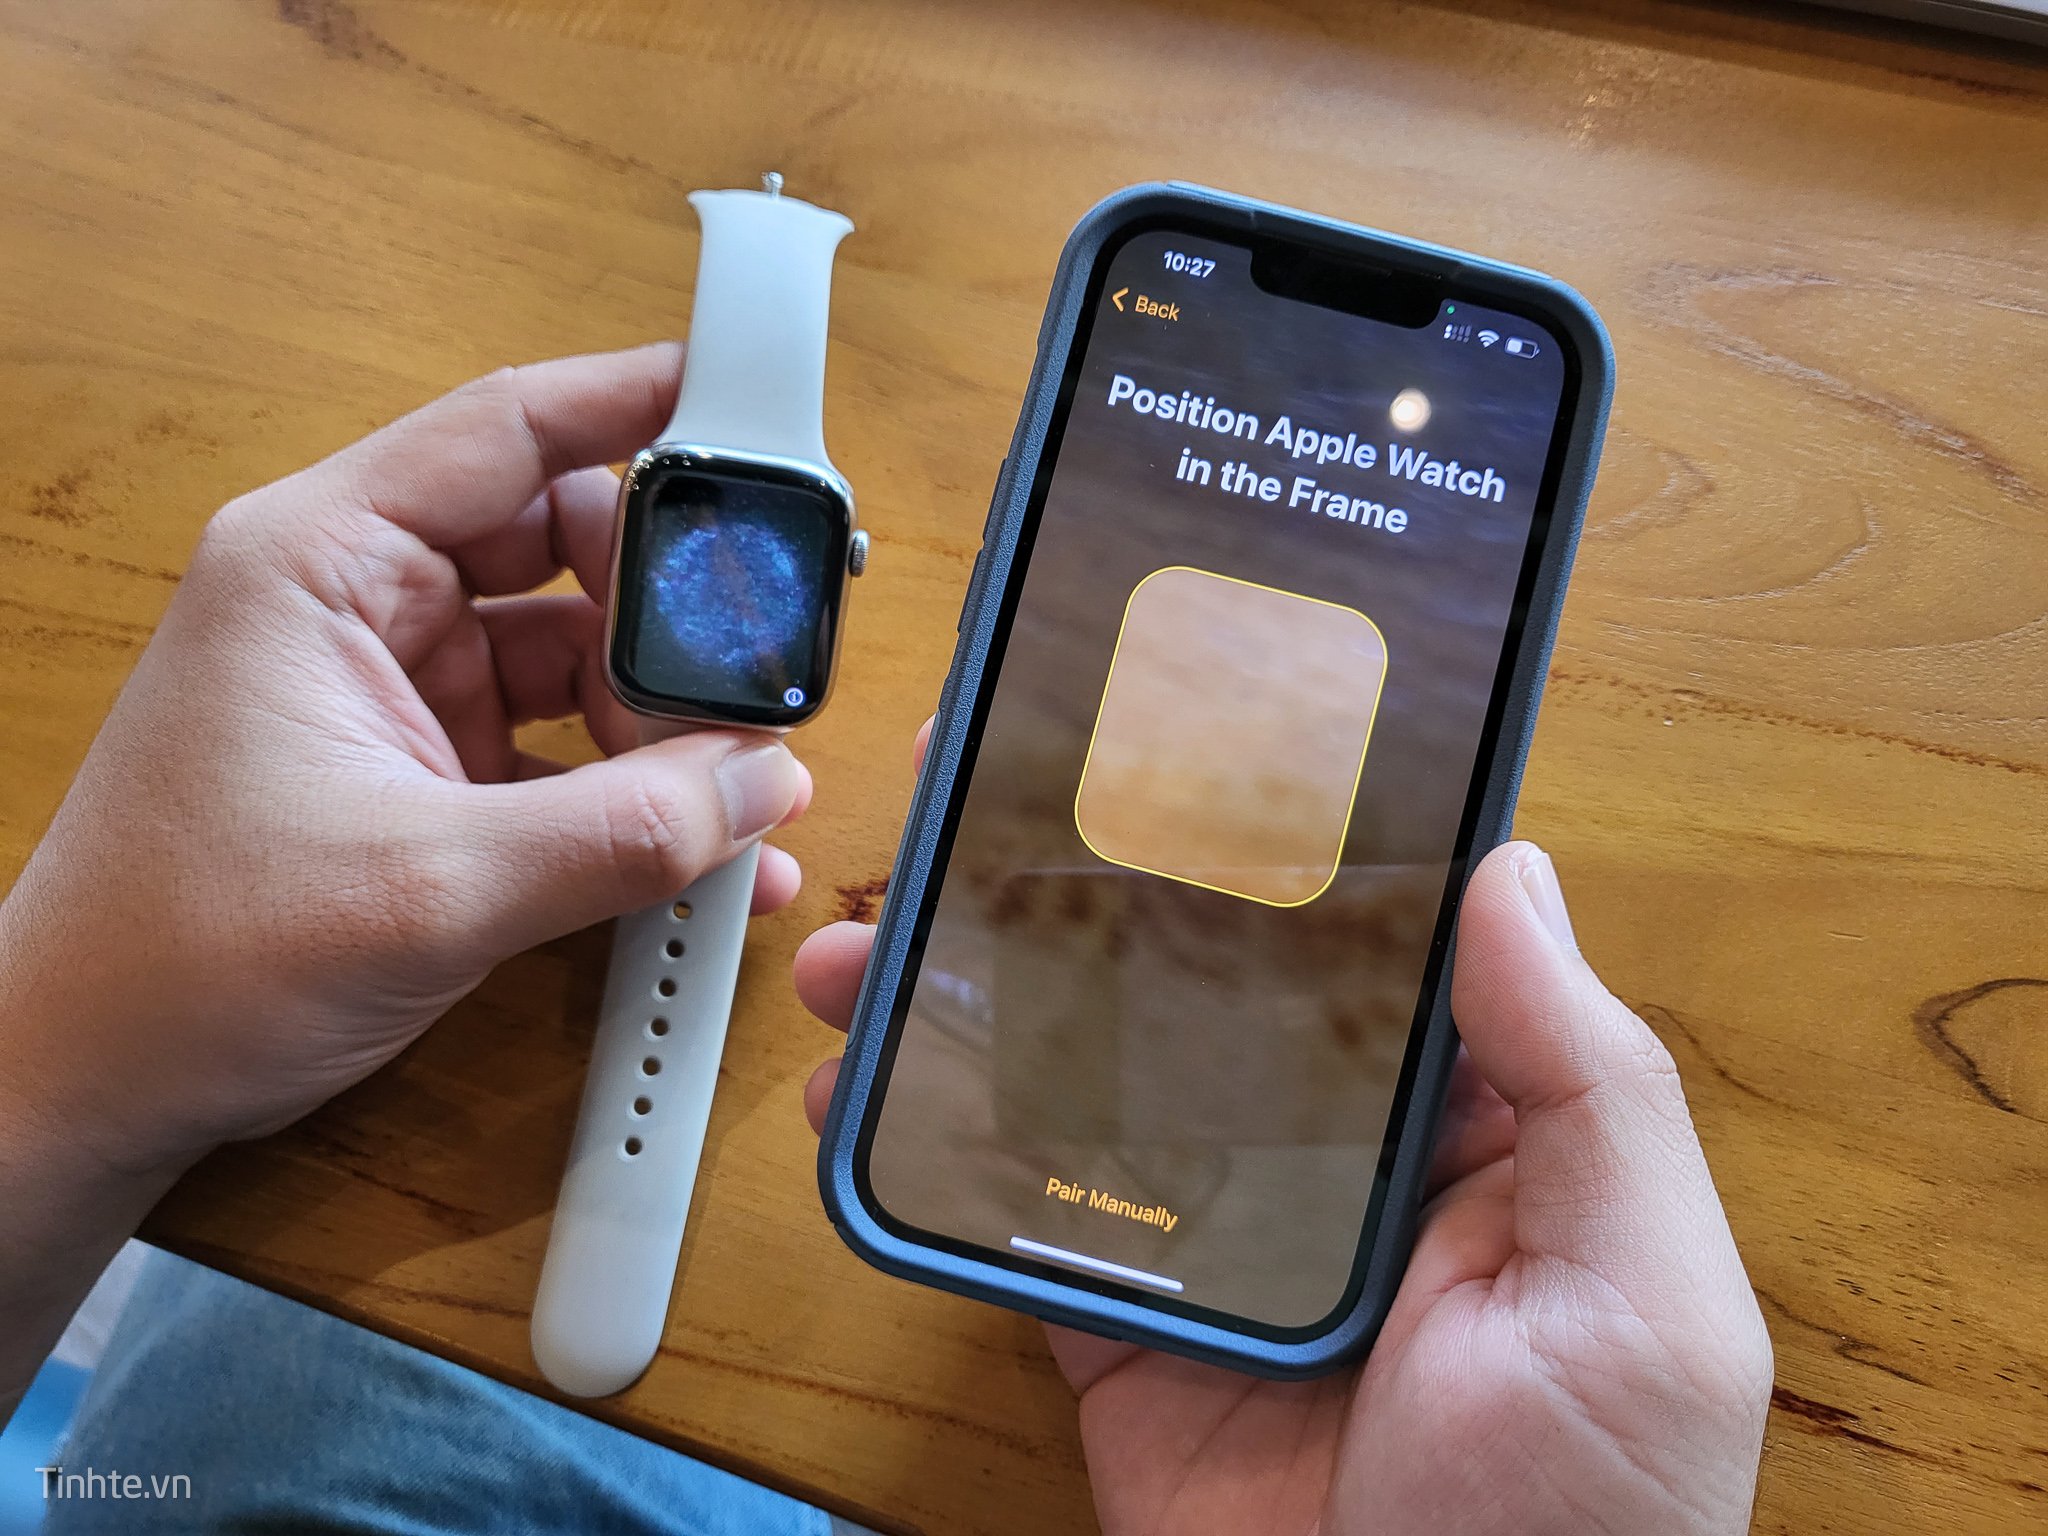 Đồng hồ thông minh Apple Watch sẽ là người bạn đồng hành đáng tin cậy của bạn trong mọi hoạt động thể thao và hằng ngày. Với nhiều tính năng tiện ích và thiết kế thời trang, bạn sẽ không chỉ cập nhật và kiểm soát được sức khỏe, mà còn có thể hoàn thành công việc hiệu quả hơn.